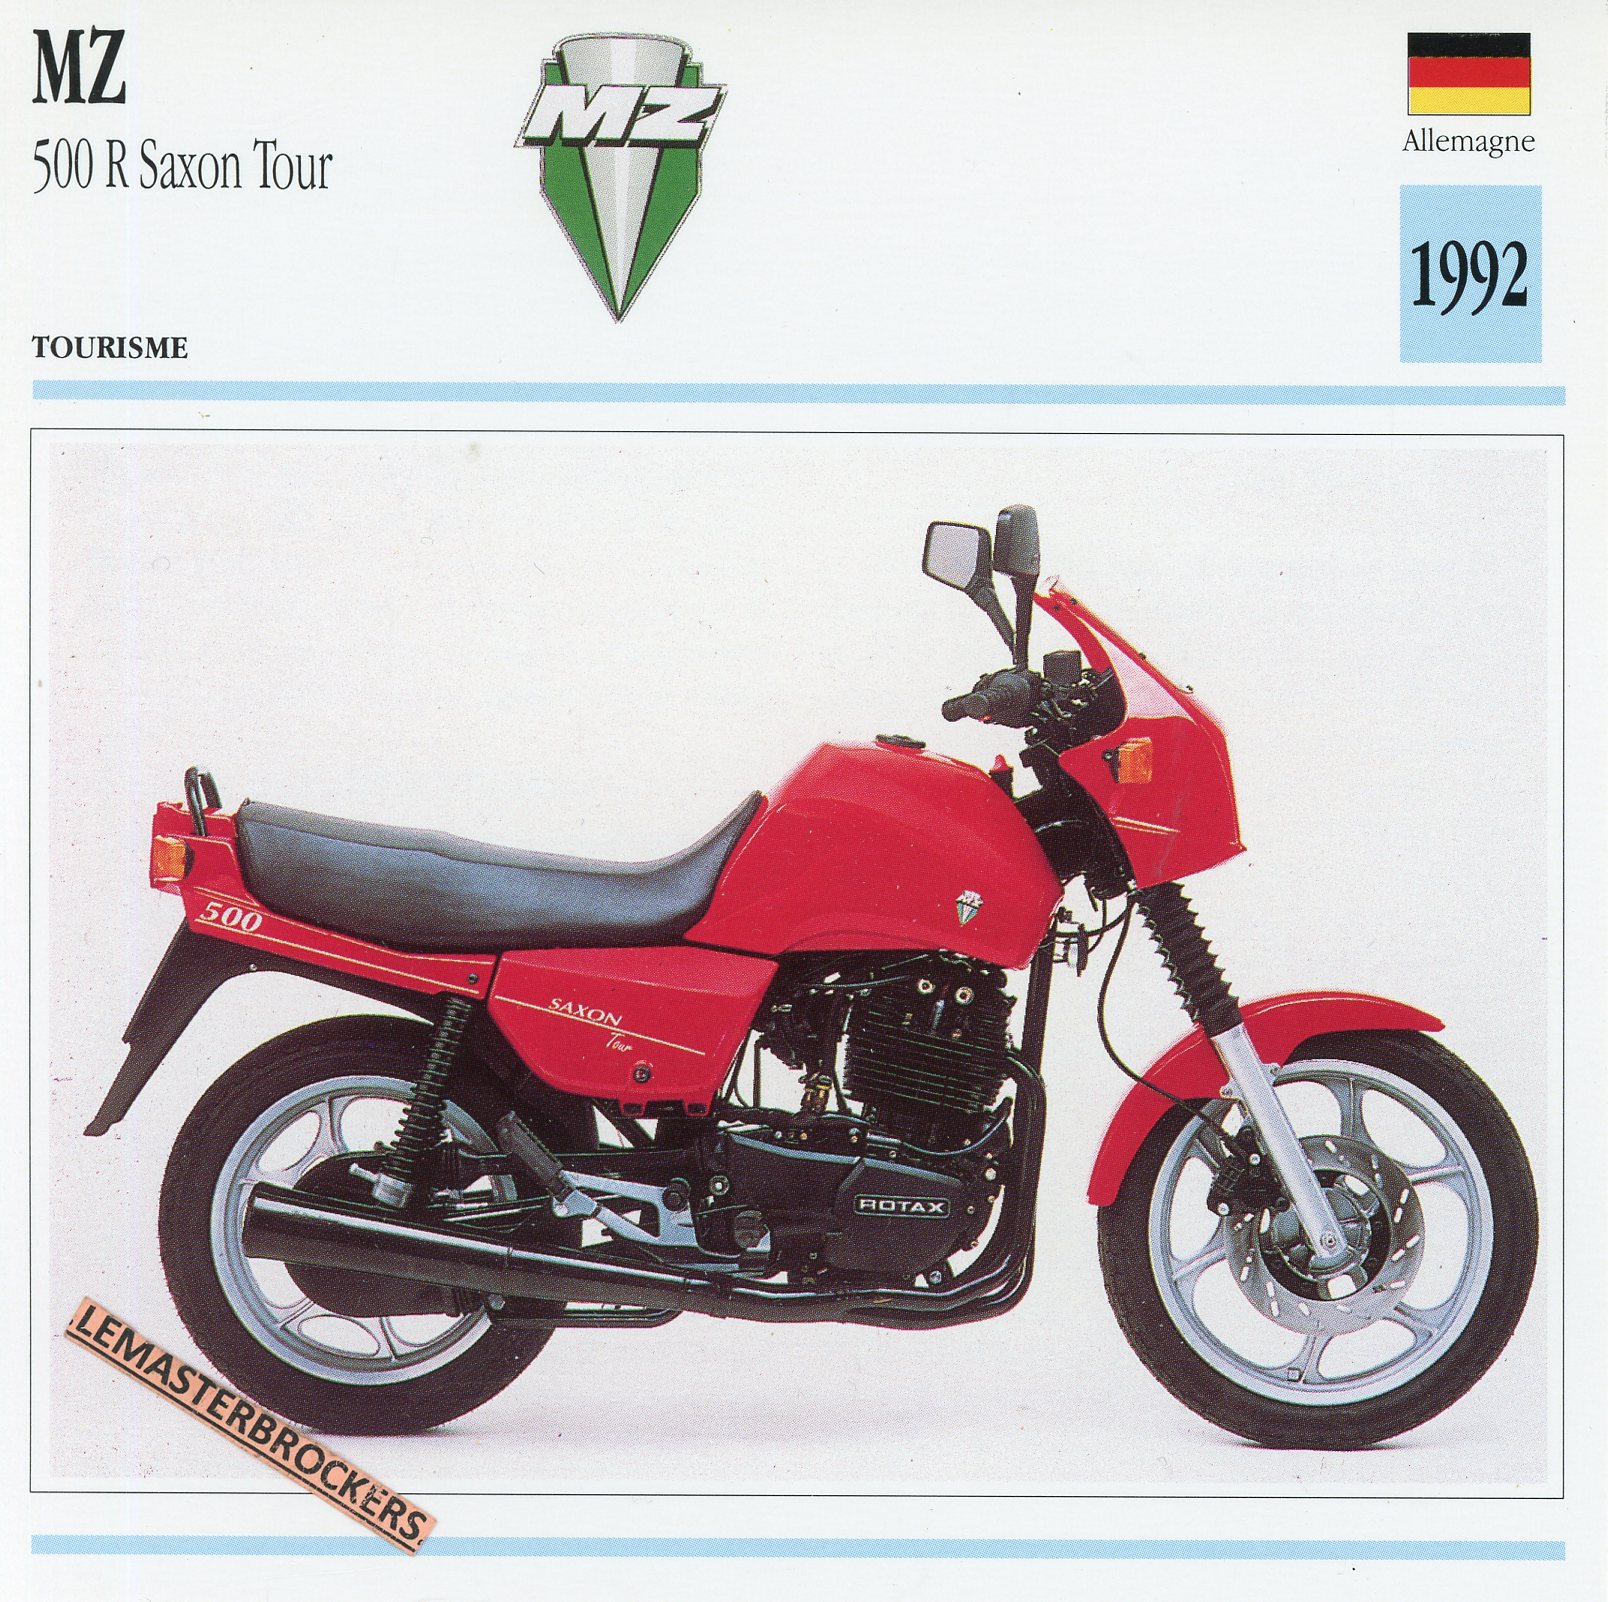 FICHE-MOTO-MZ-500-SAXON-TOUR-1992-MUZ-LEMASTERBROCKERS